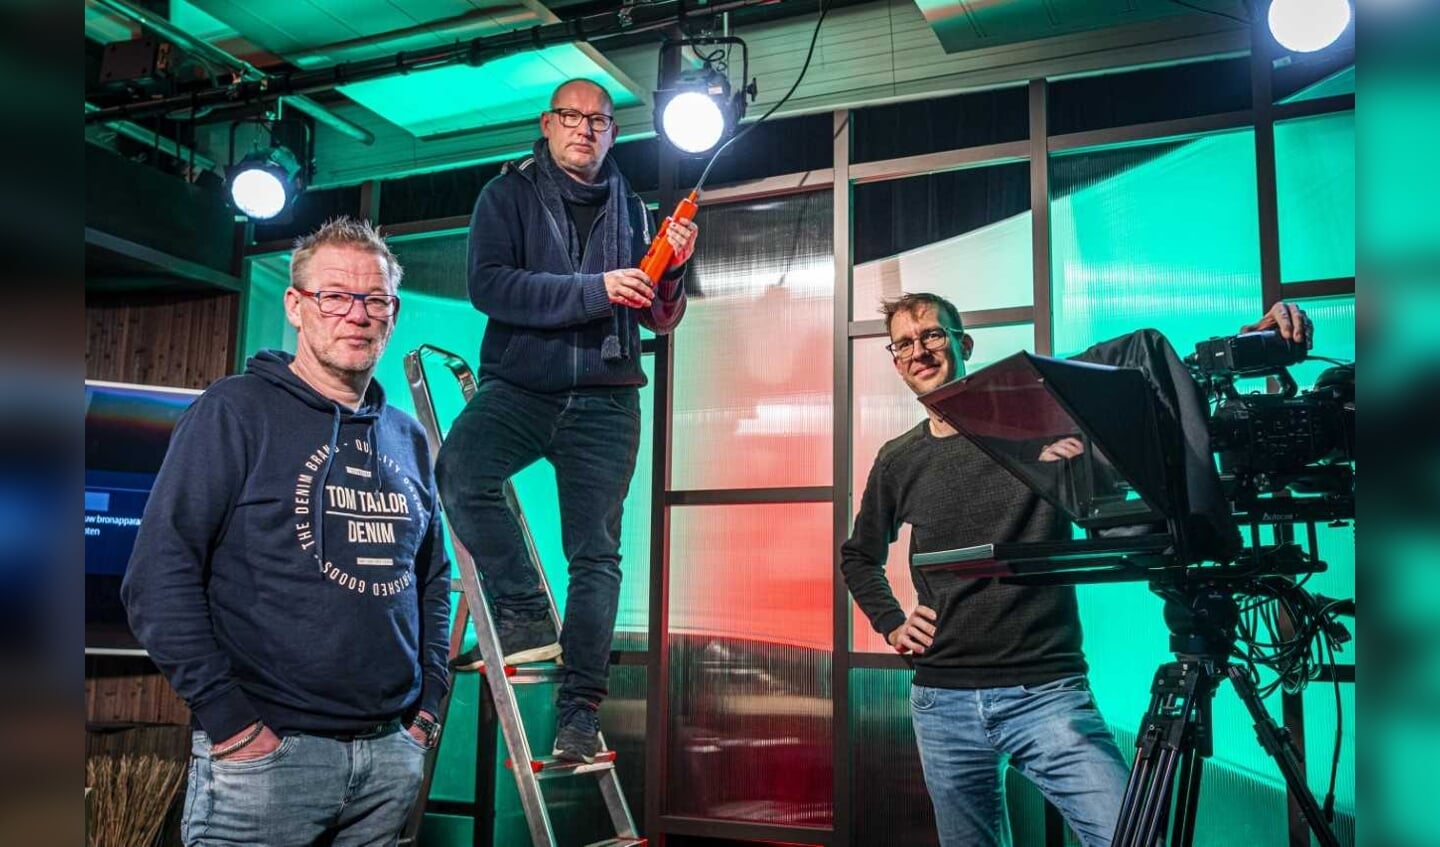 Jannes Mulder, Roderick Aal en Bas Ardesch verzorgen de bingo op 2 januari. Jaap de Vries ontbreekt op de foto.